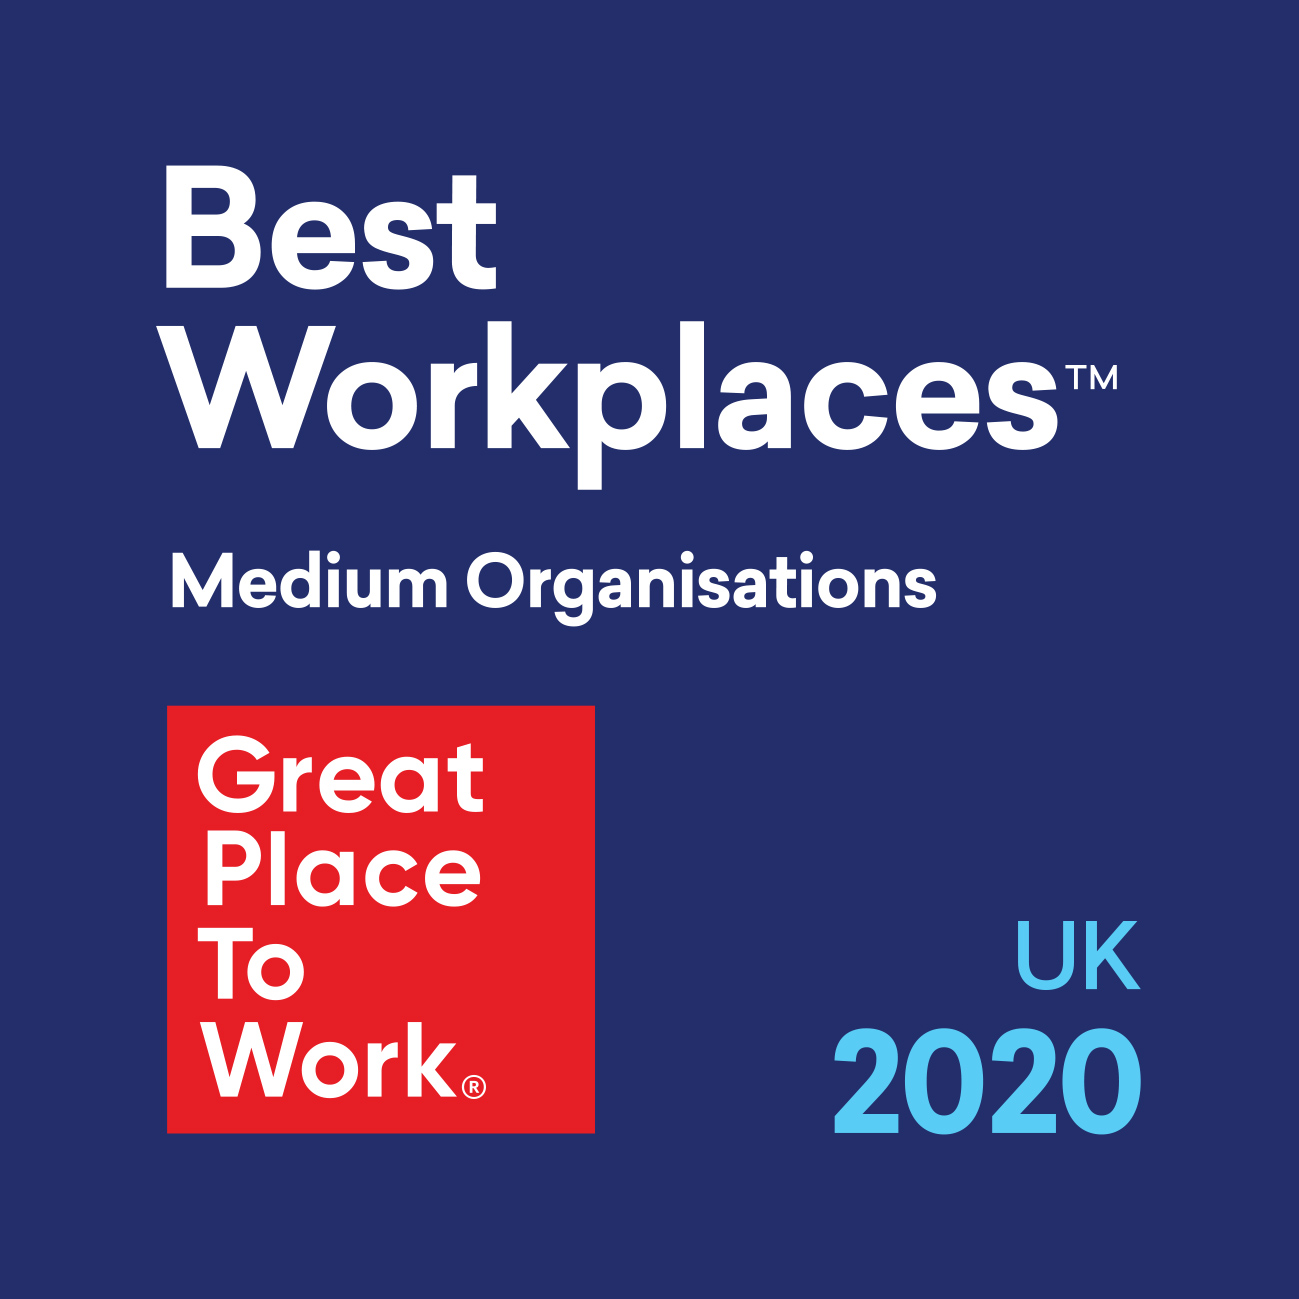 Webbs wins UK Best Workplace™ 2020 award